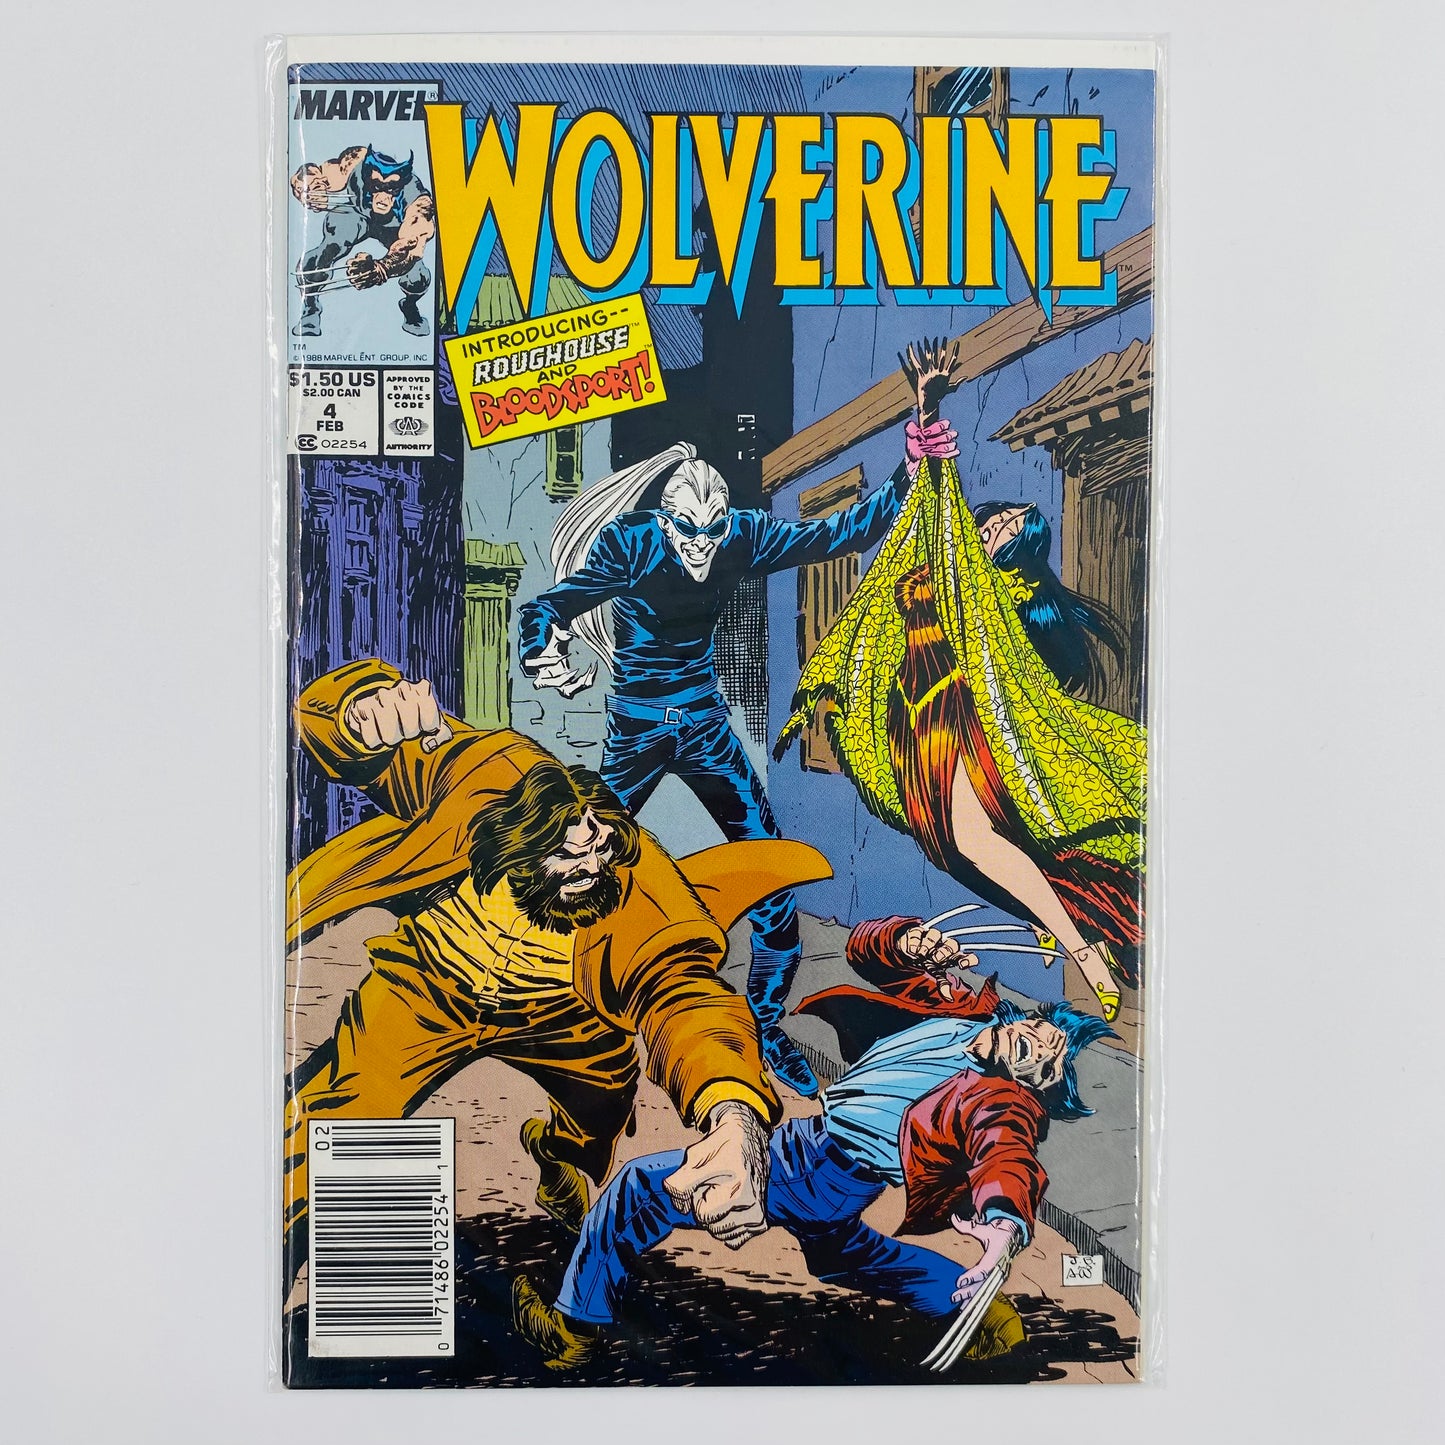 Wolverine #4 “Bloodsport!" (1989) Marvel